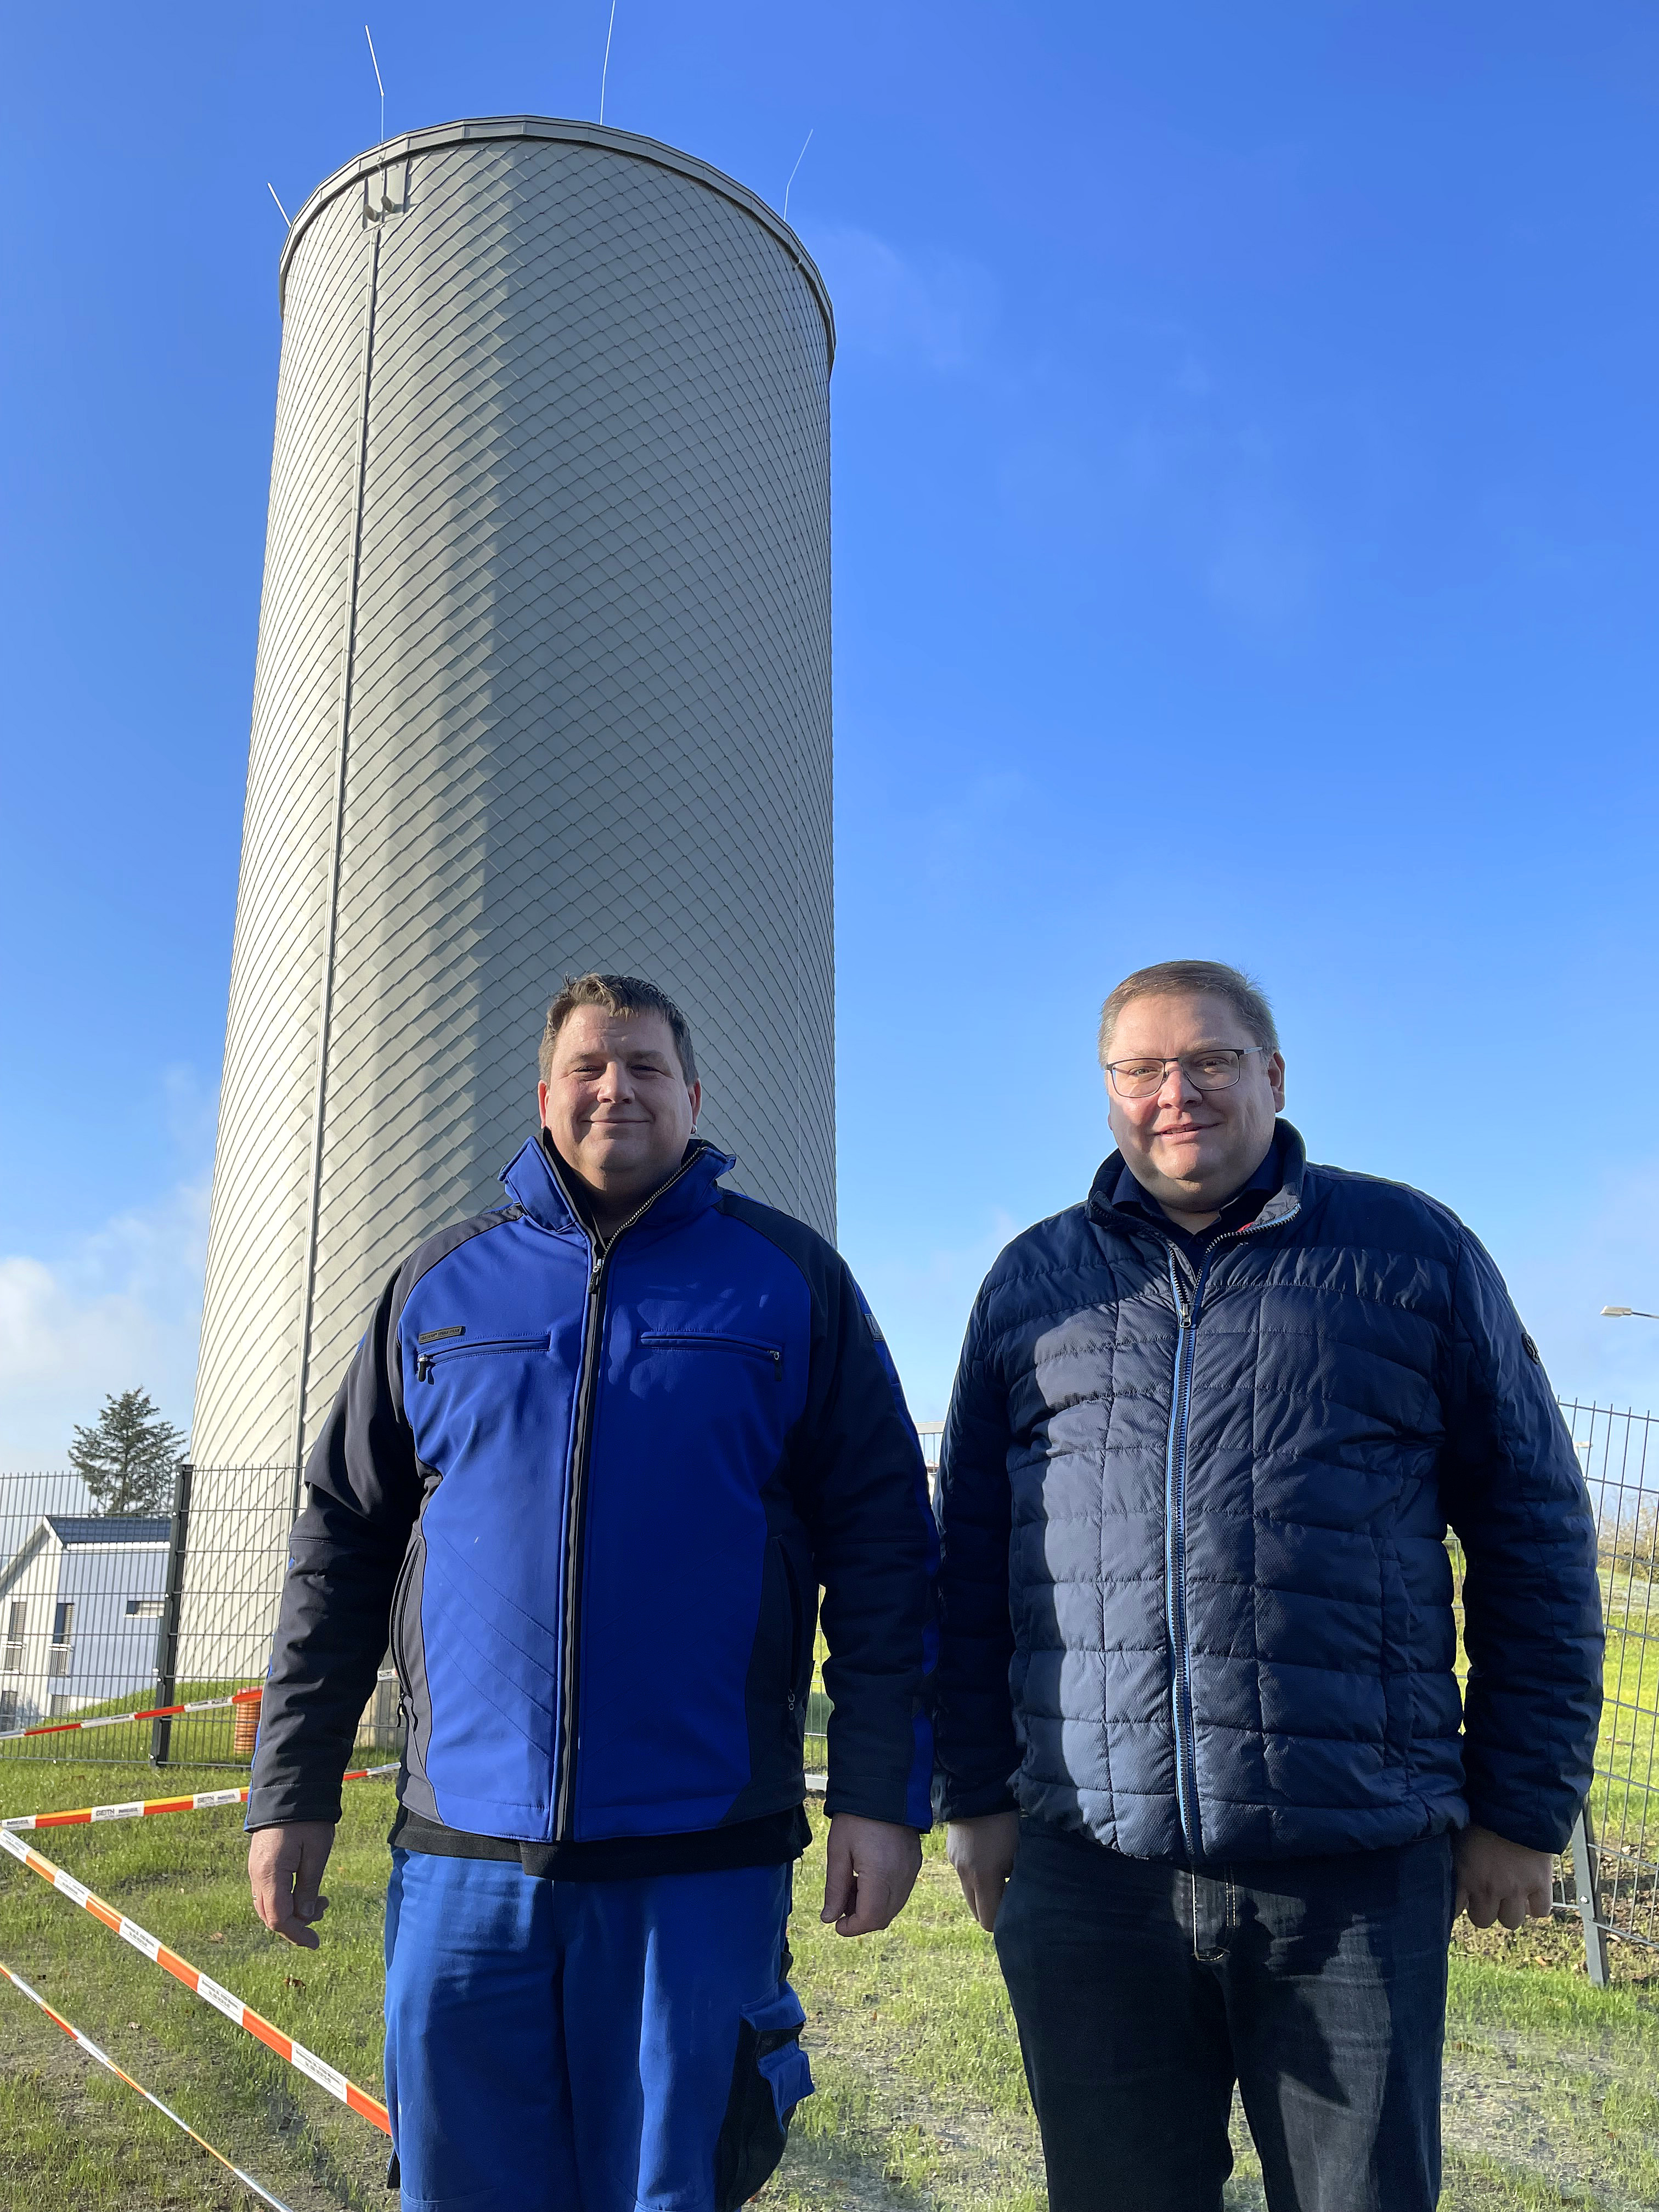 Freuen sich über die erfolgreich abgeschlossene Außensanierung des Hemauer Wasserturms: Stadtwerke-Werkleiter Thomas Mehring (rechts) und Johannes Nigl (links), Technischer Leiter der Wasserversorgung bei den Stadtwerken Hemau.